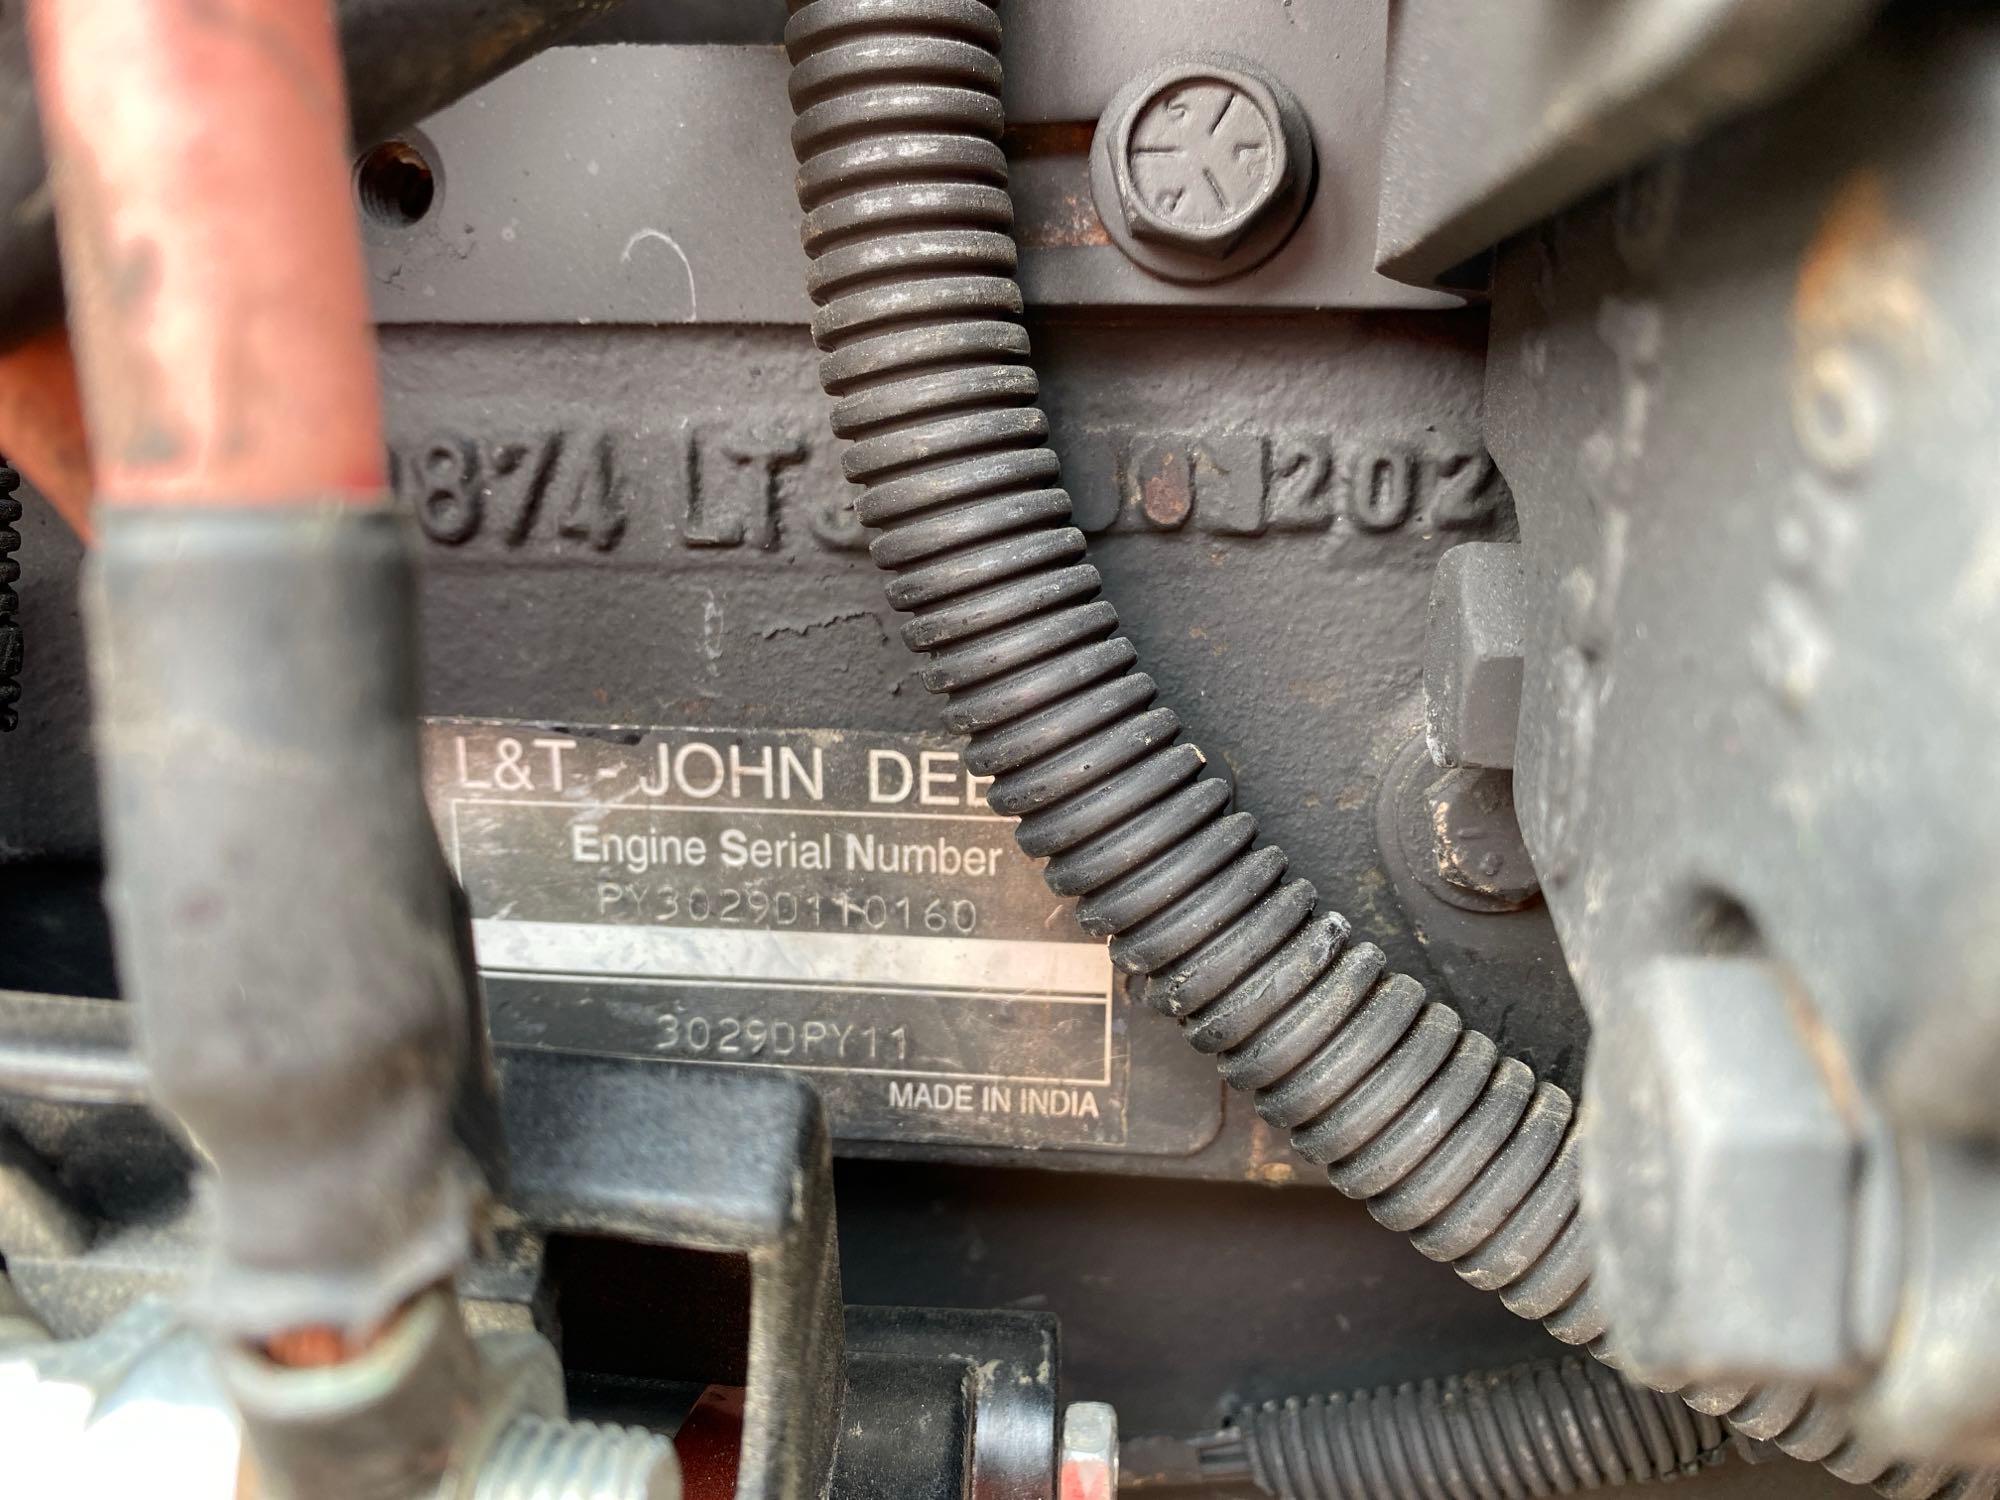 John Deere 5103 Tractor